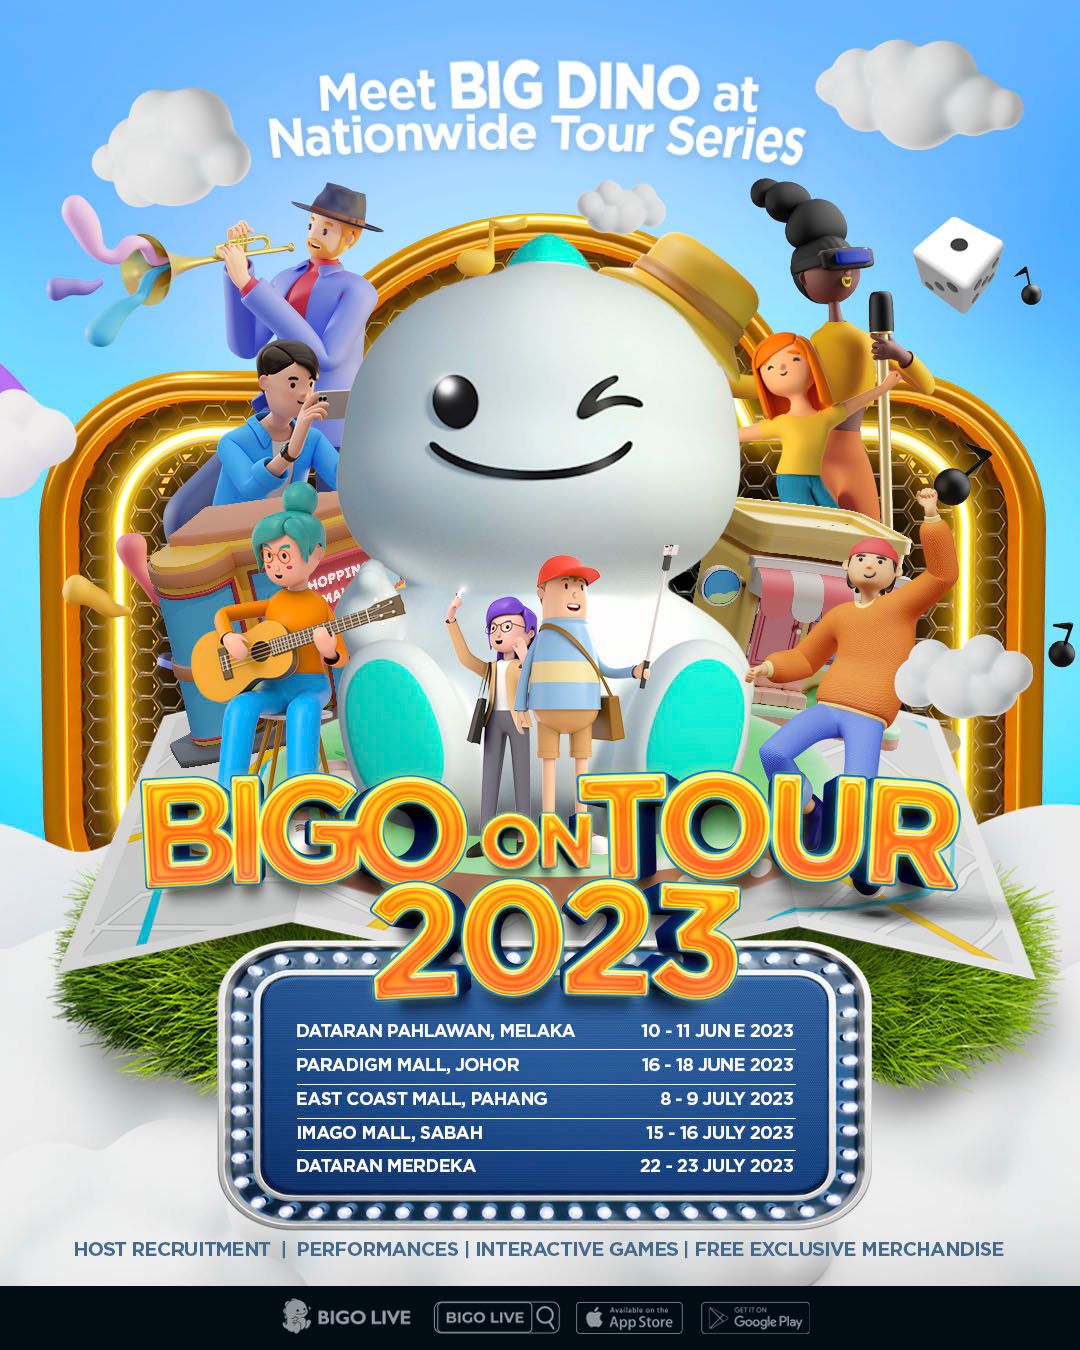 BIGO Giant Dino Tour in Malaysia